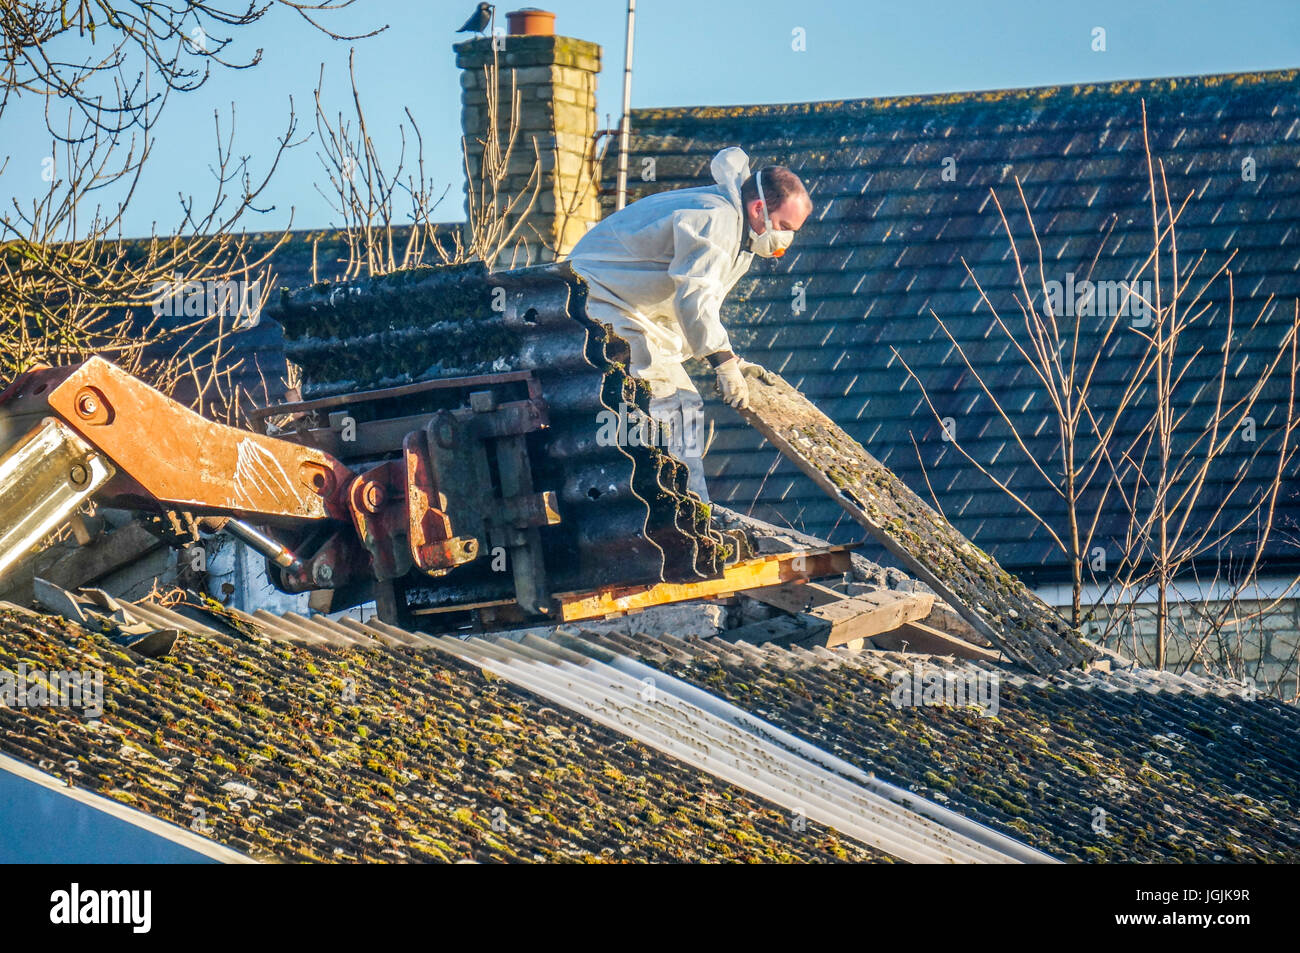 Ein Mann durch das Tragen von schützender Kleidung während der Entfernung von Asbest Dacheindeckung aus einer alten Scheune. Lincolnshire, England, UK. Stockfoto